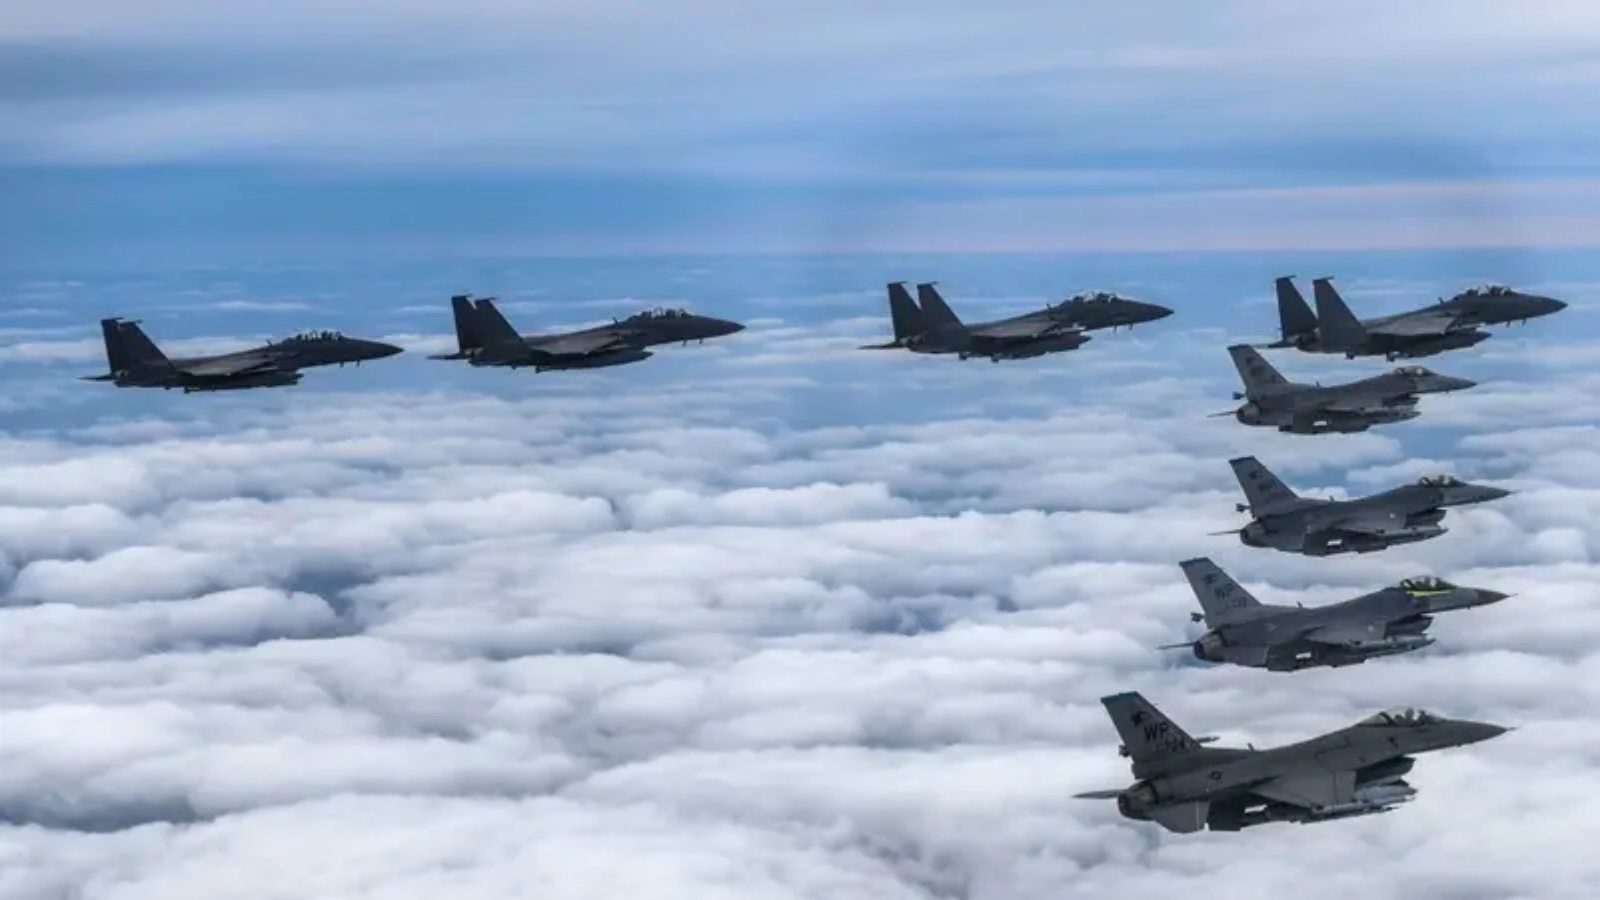 أربع مقاتلات تابعة للقوات الجوية الكورية الجنوبية من طراز F-15K وأربع مقاتلات من طراز F-16 تابعة للقوات الجوية الأميركية تحلق فوق كوريا الجنوبية، خلال تمرين قصف دقيق ردًا على كوريا الشمالية التي أطلقت صاروخ باليستي متوسط ​​المدى فوق اليابان